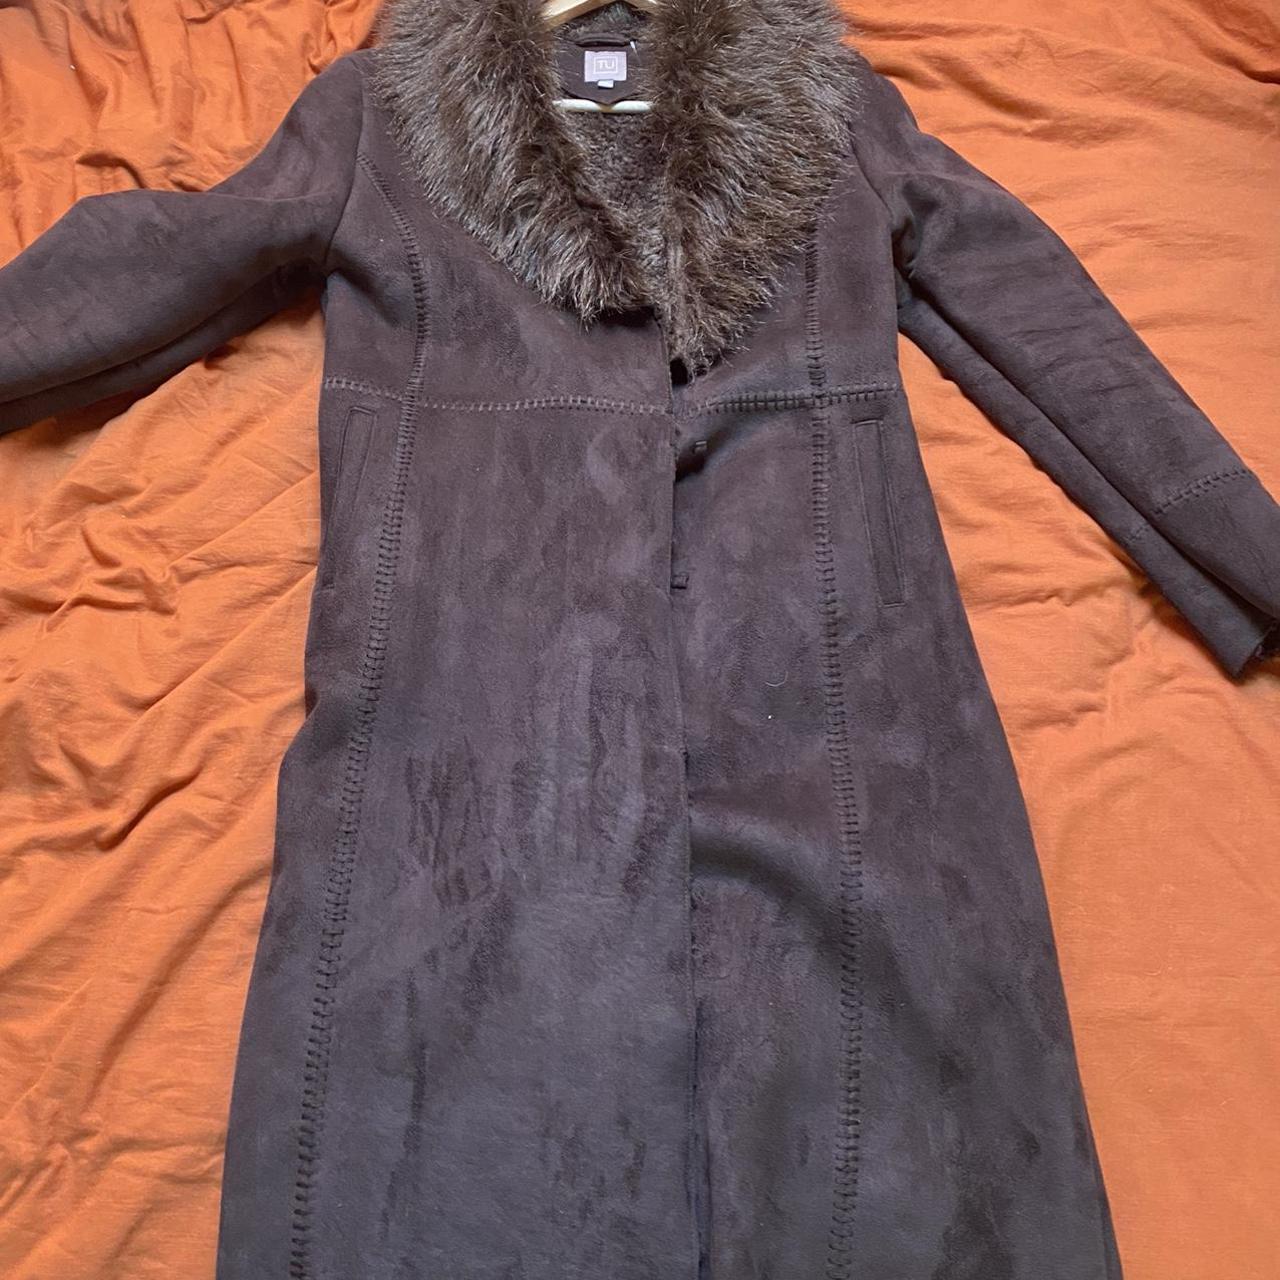 afghan coat long brown vintage afghan coat... - Depop